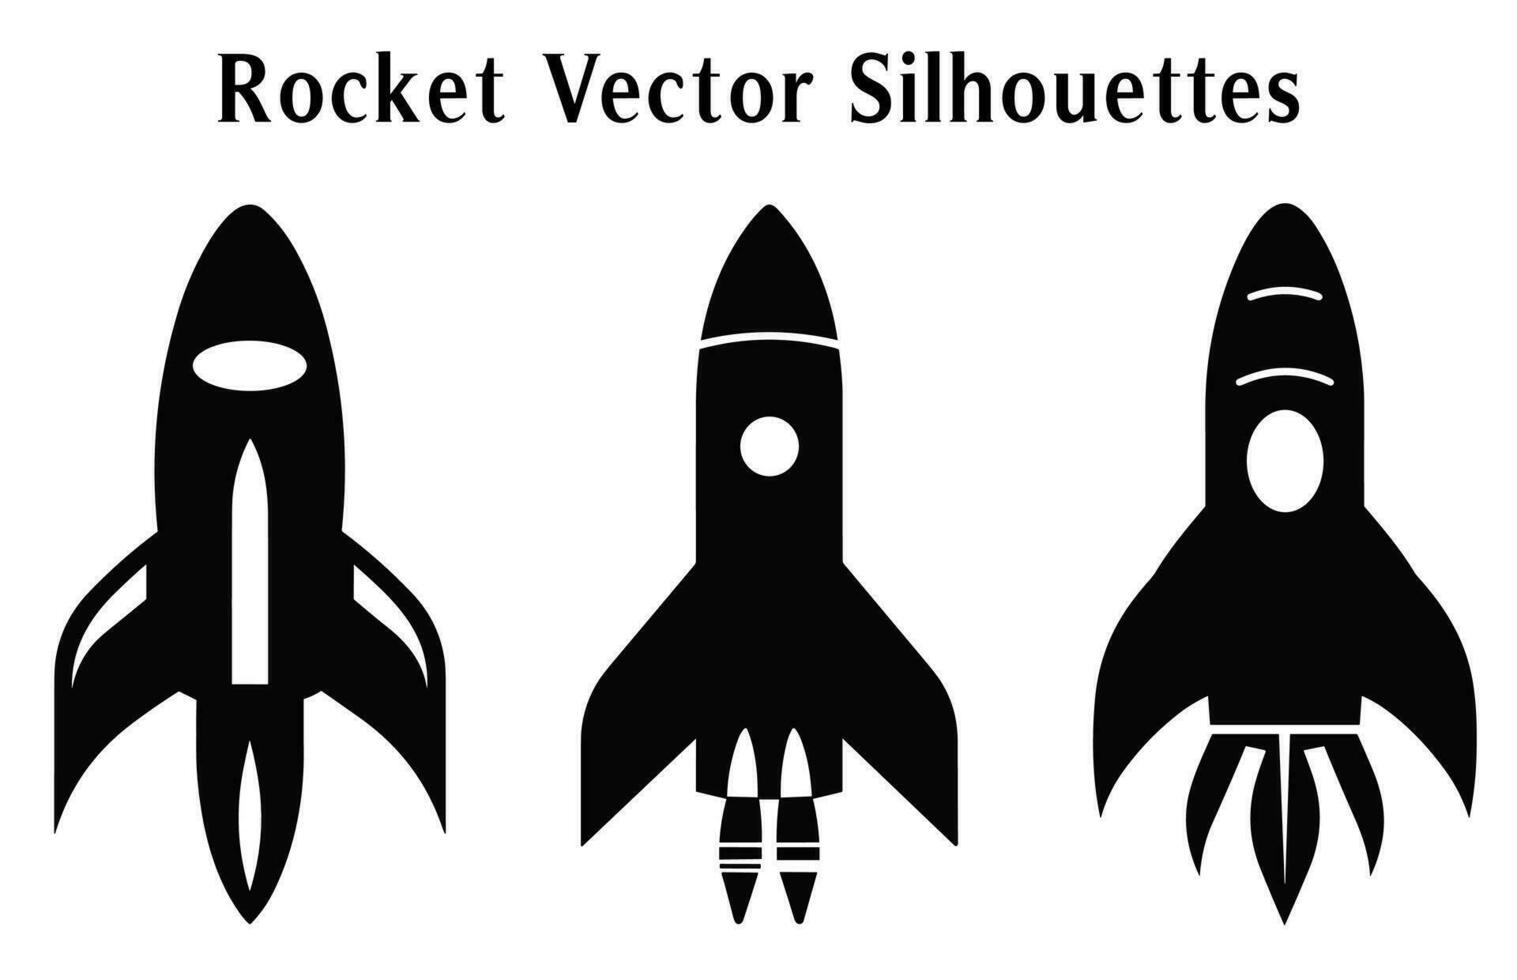 Rakete Silhouetten Vektor frei, einstellen von Rakete Symbole Vektor, starten Raumschiff und Raumfahrzeug Silhouetten